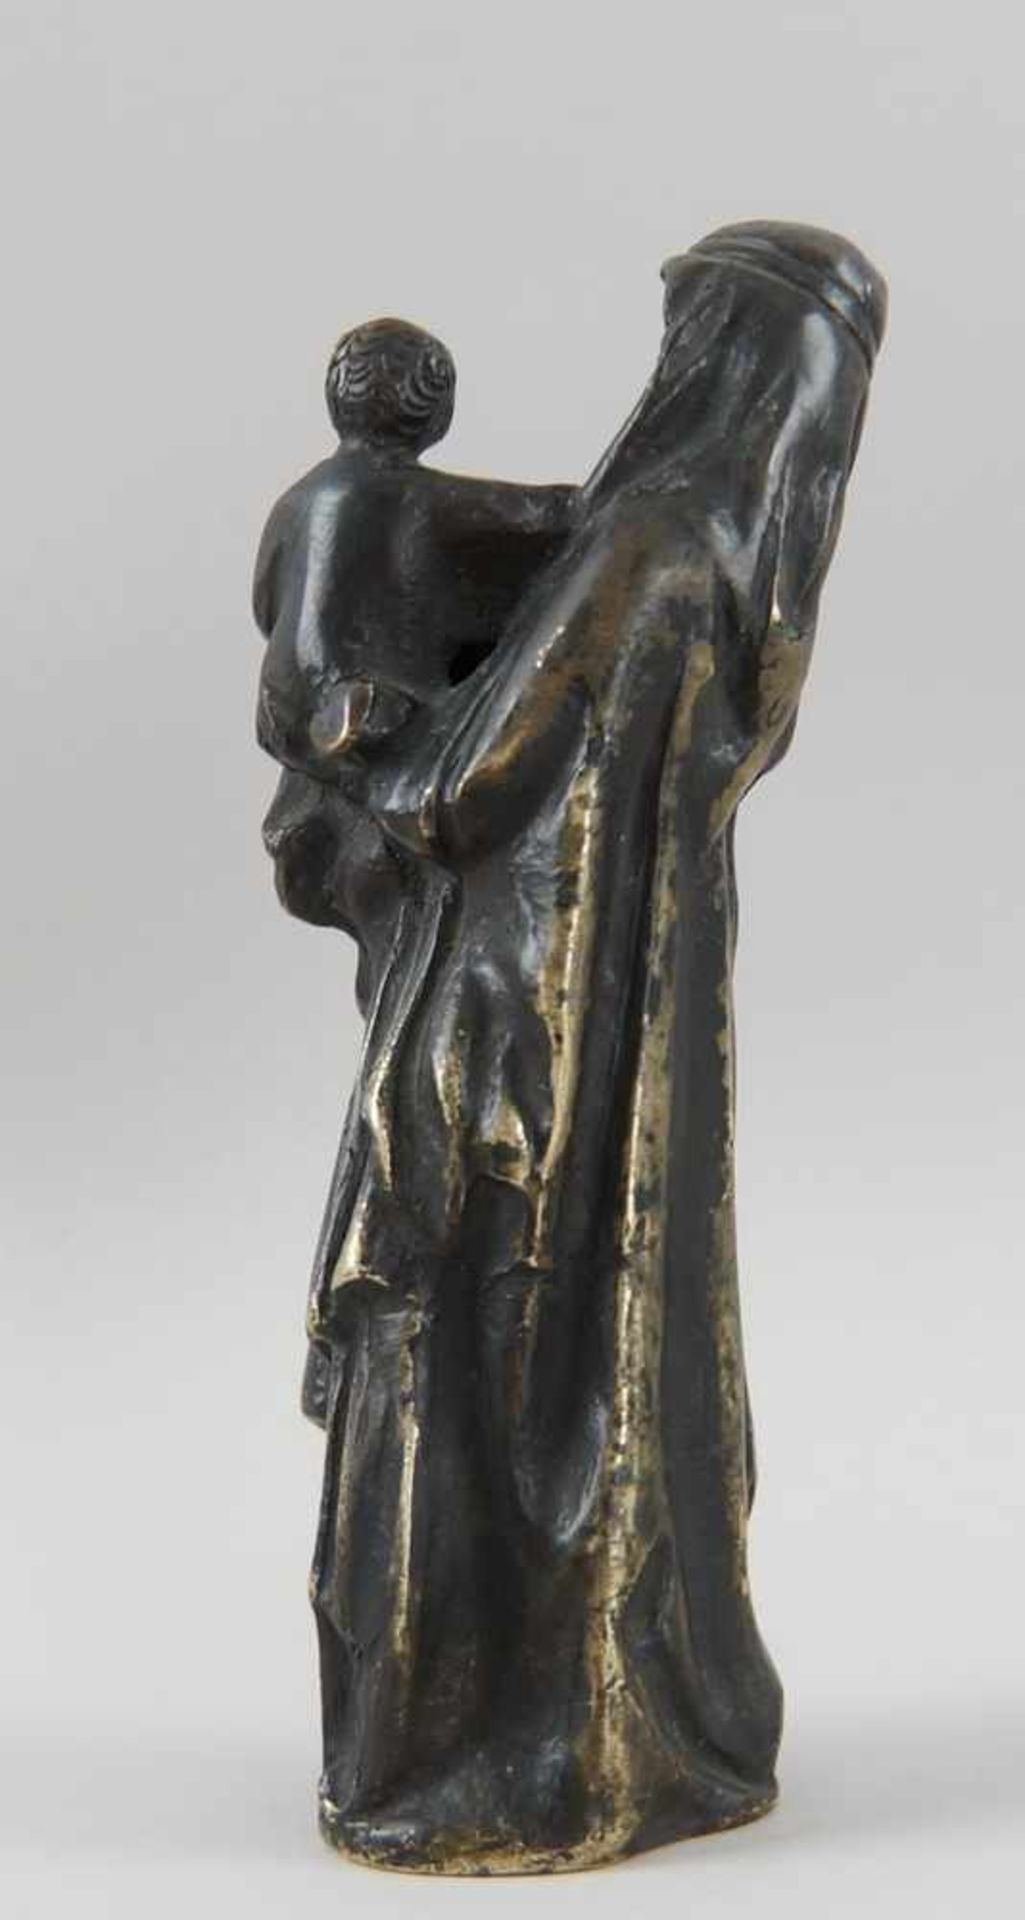 Gotische Skulptur einer Madonna mit Kind, Bronze, wohl um 1500, H 17,5 cm - Bild 6 aus 8